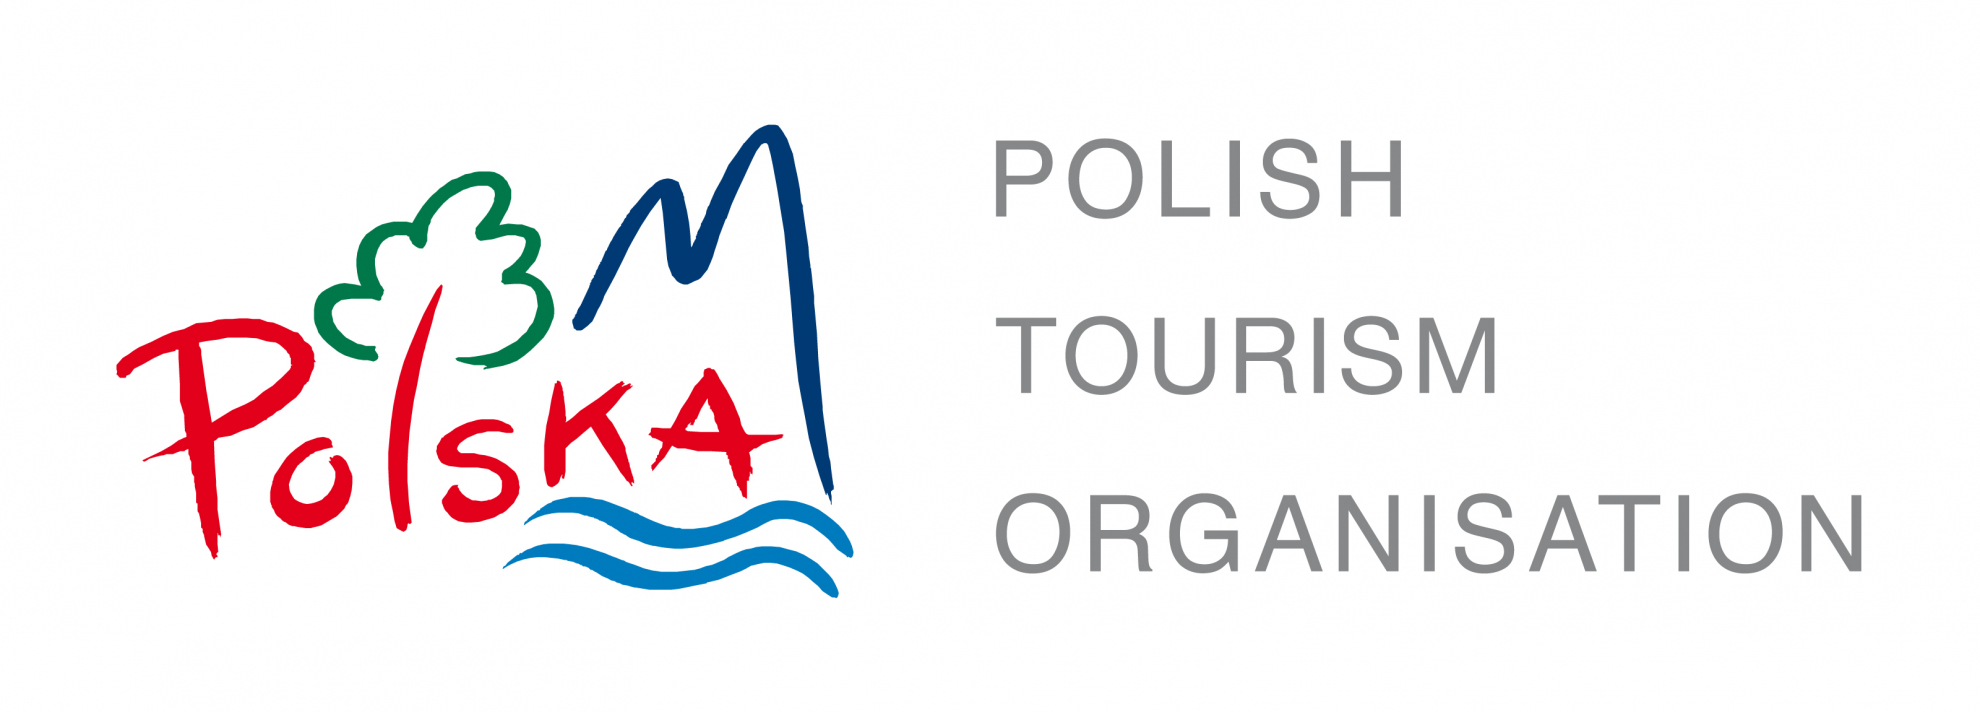 www.polscha.travel